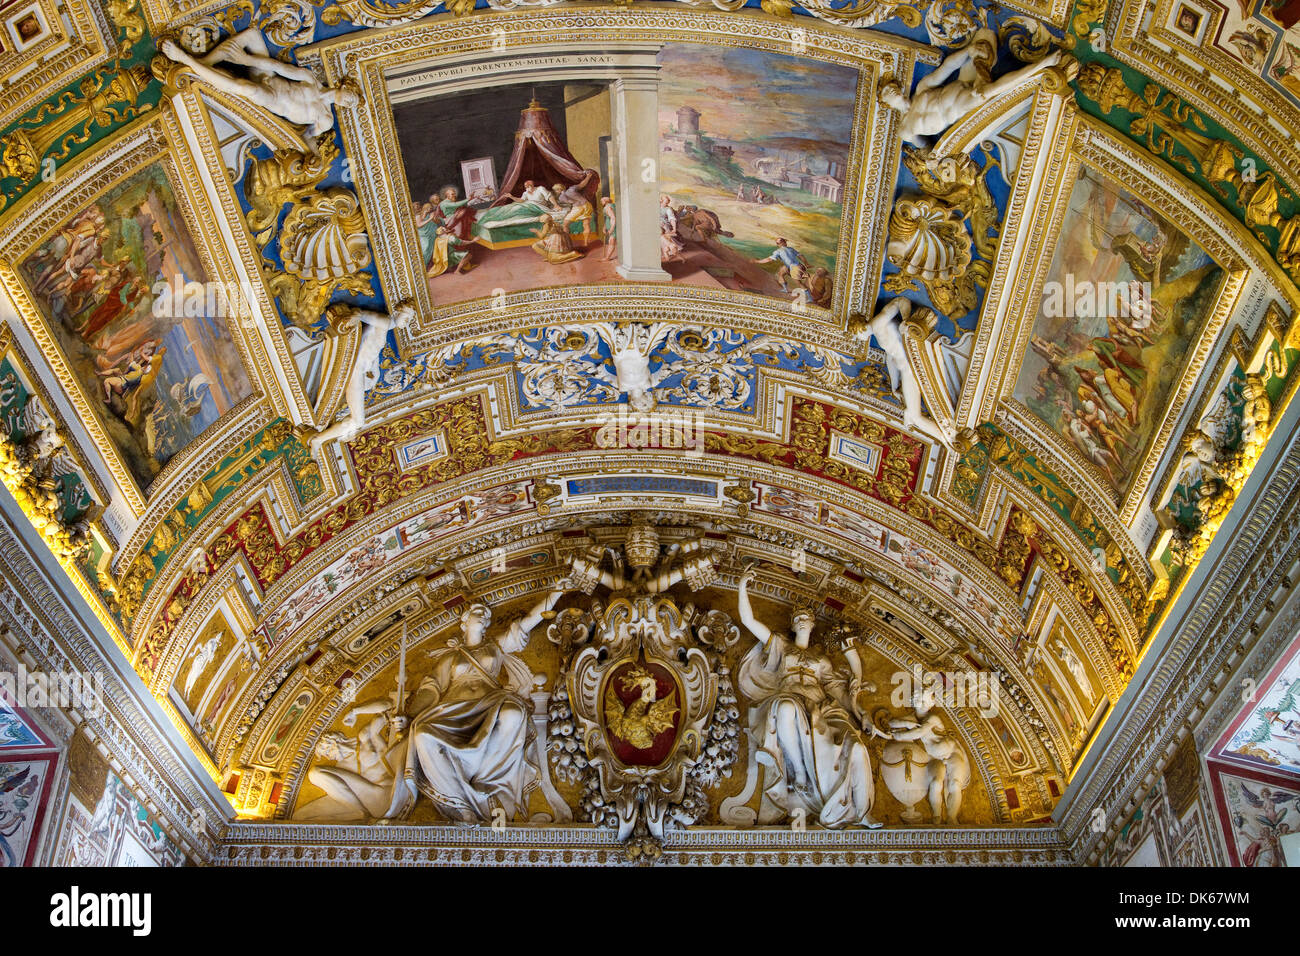 Soffitto a volta della galleria di mappe (Galleria delle carte geografiche) nei Musei Vaticani Città del Vaticano. Foto Stock